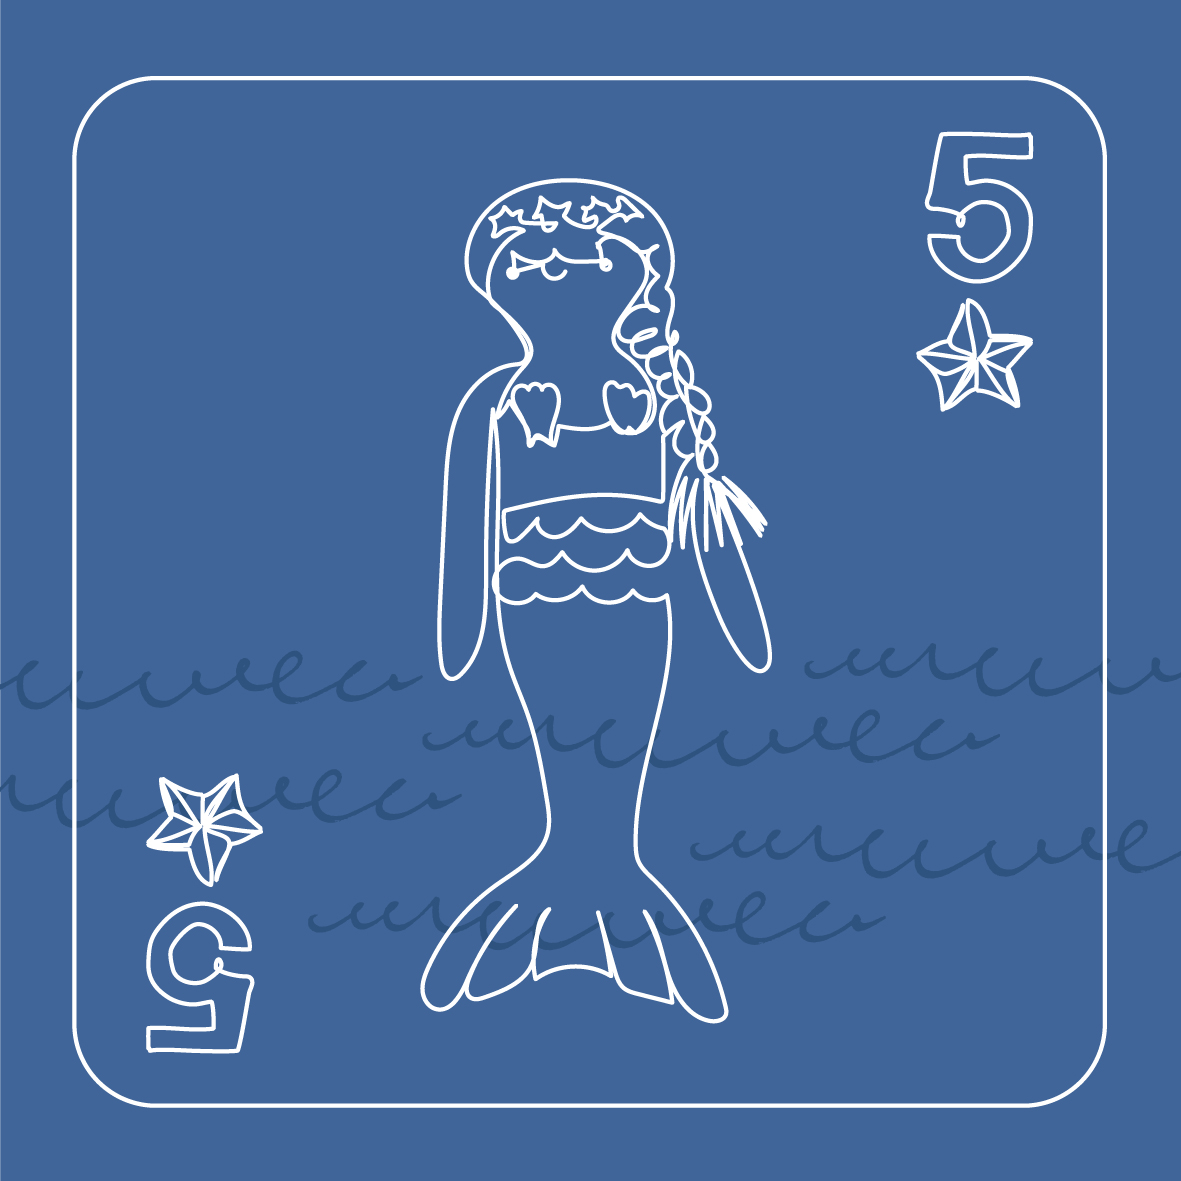 5 mermaids swimming